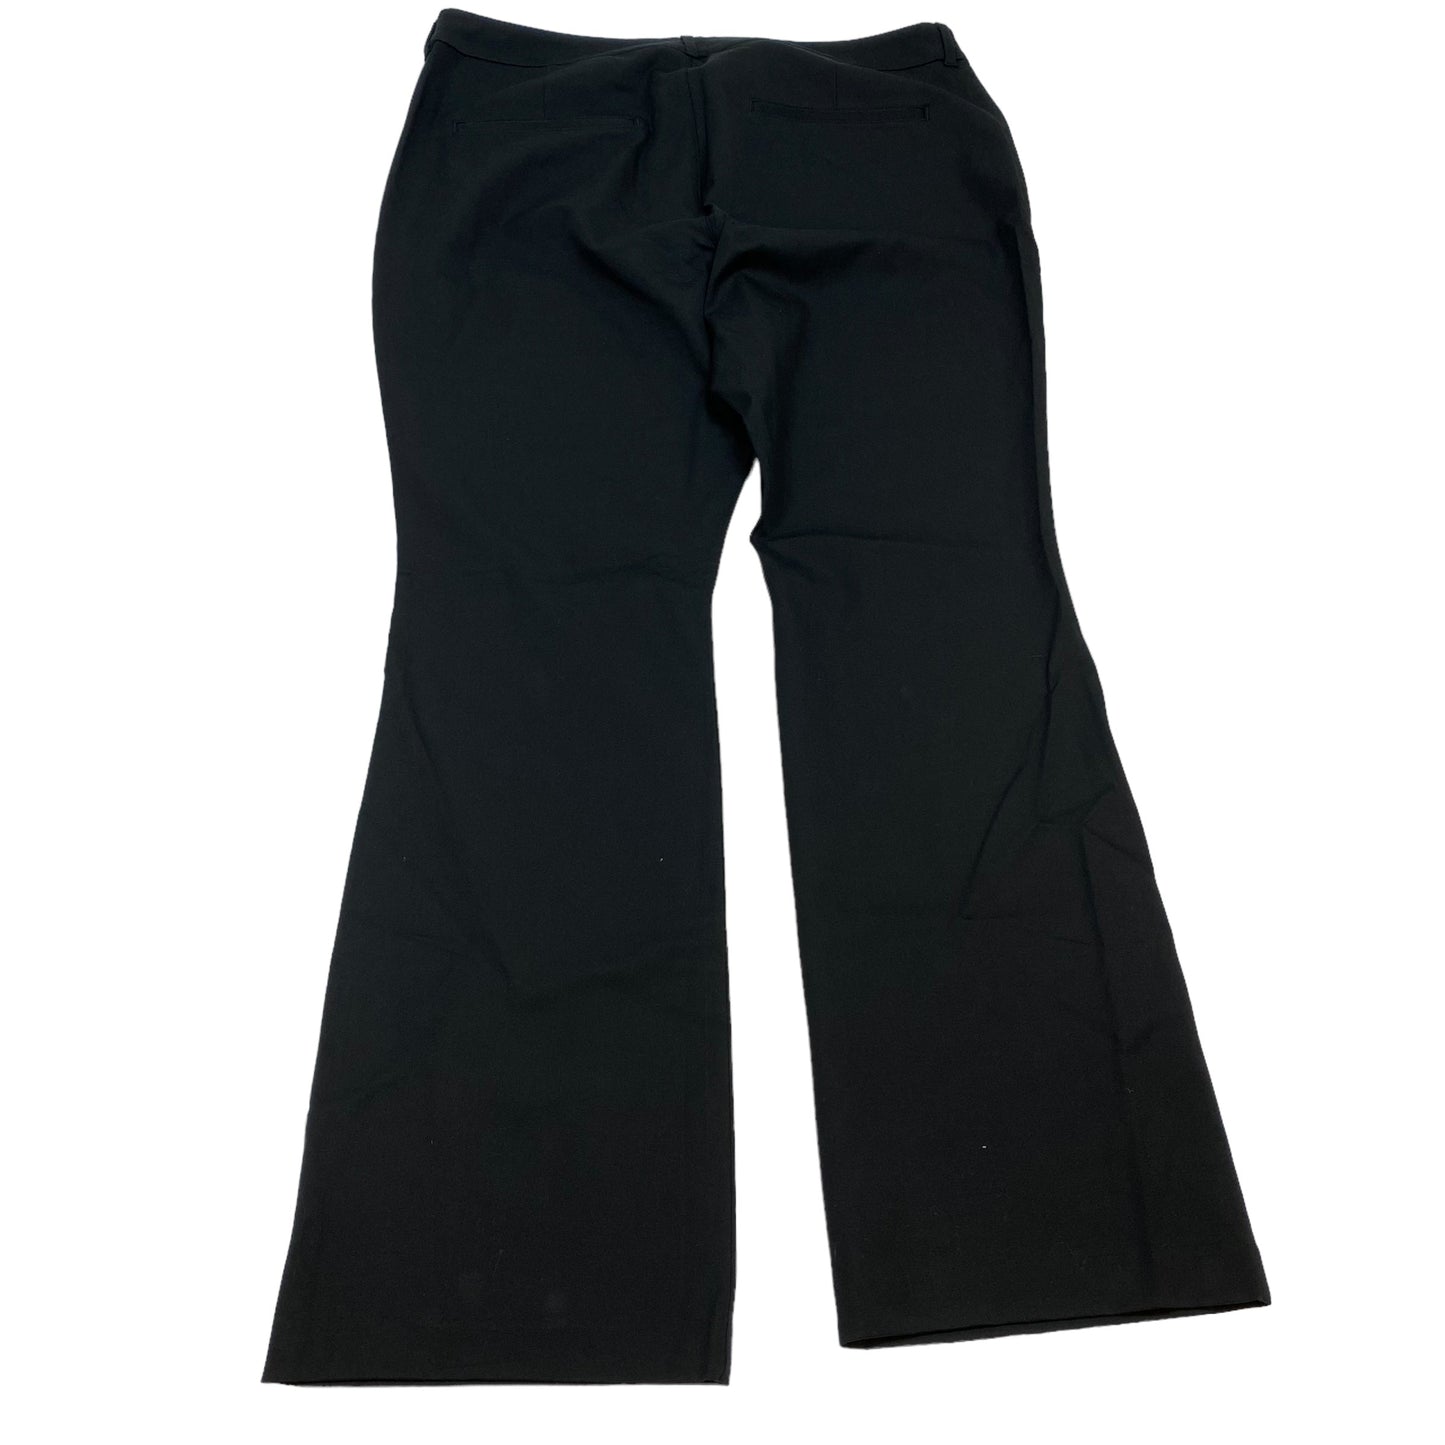 Black Pants Dress Old Navy, Size 18